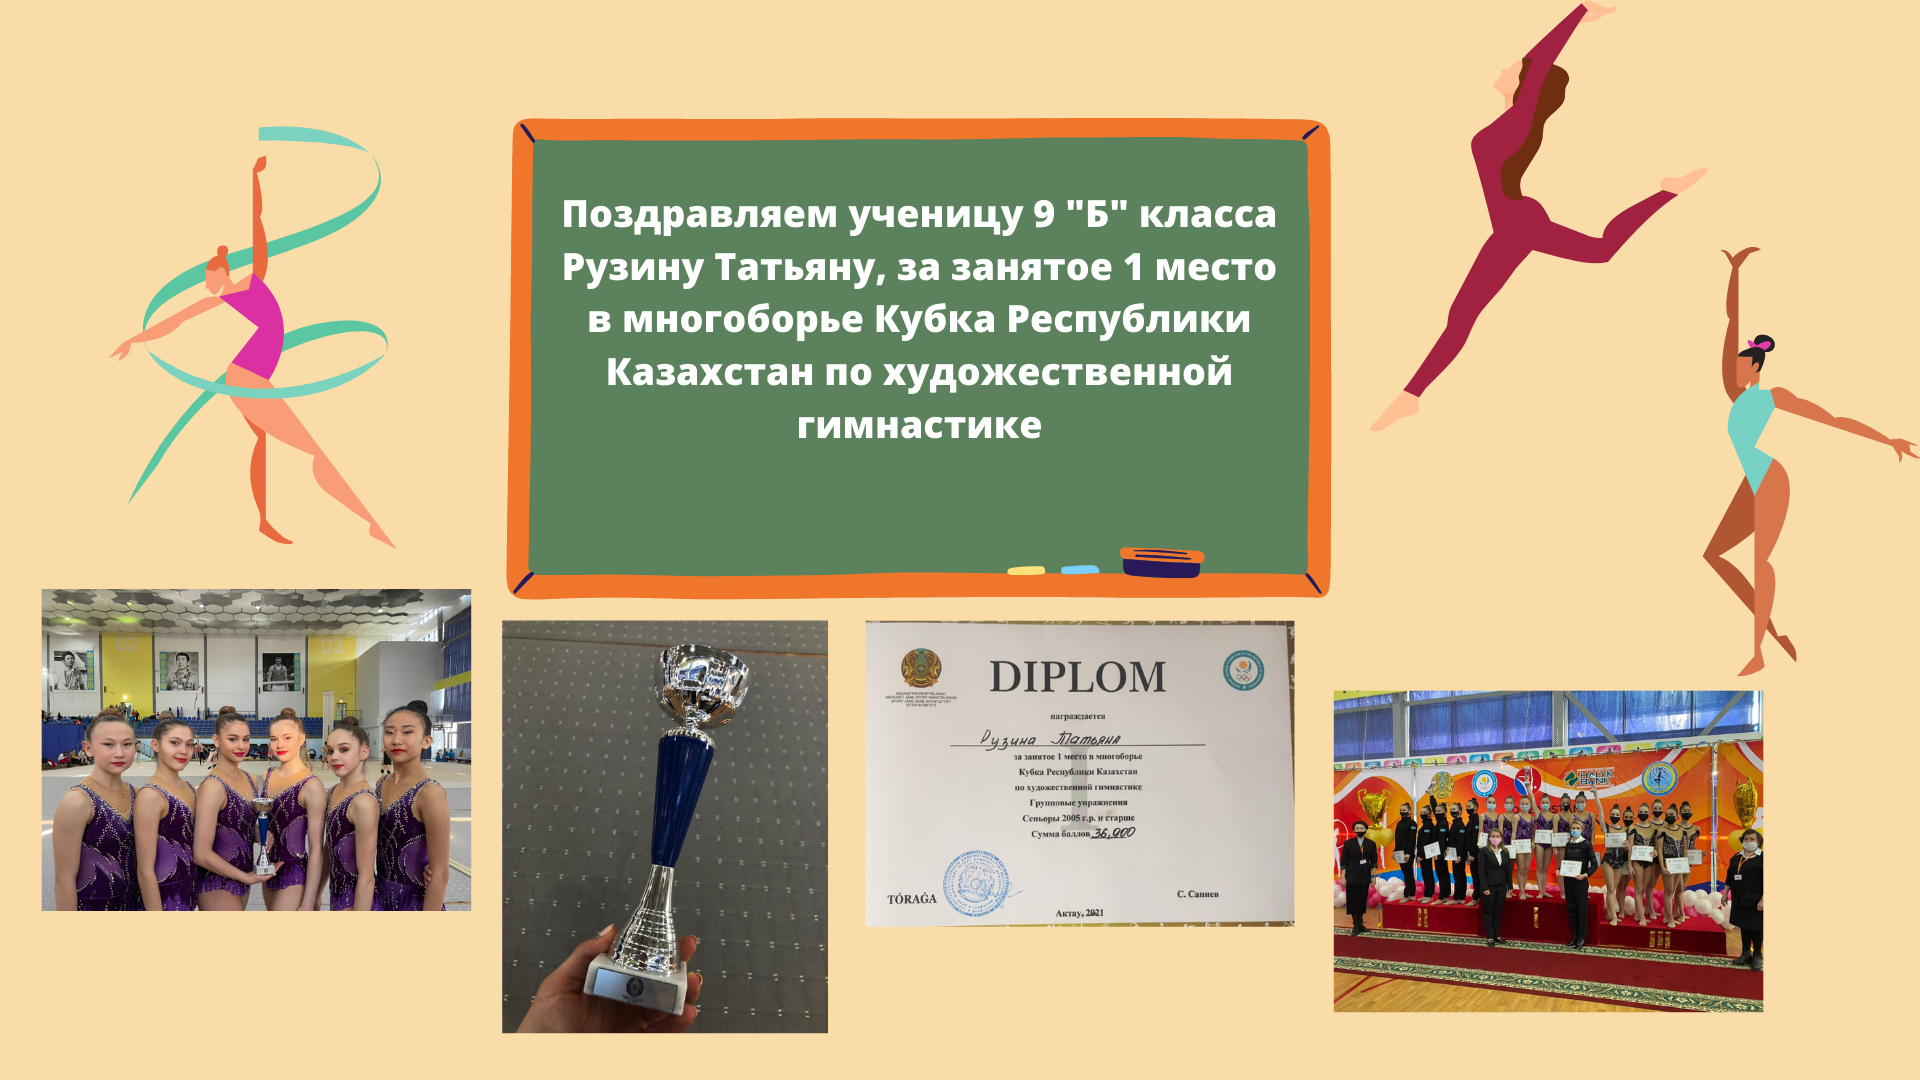 1 место в многоборье Кубка Республики Казахстан по художественной гимнастике